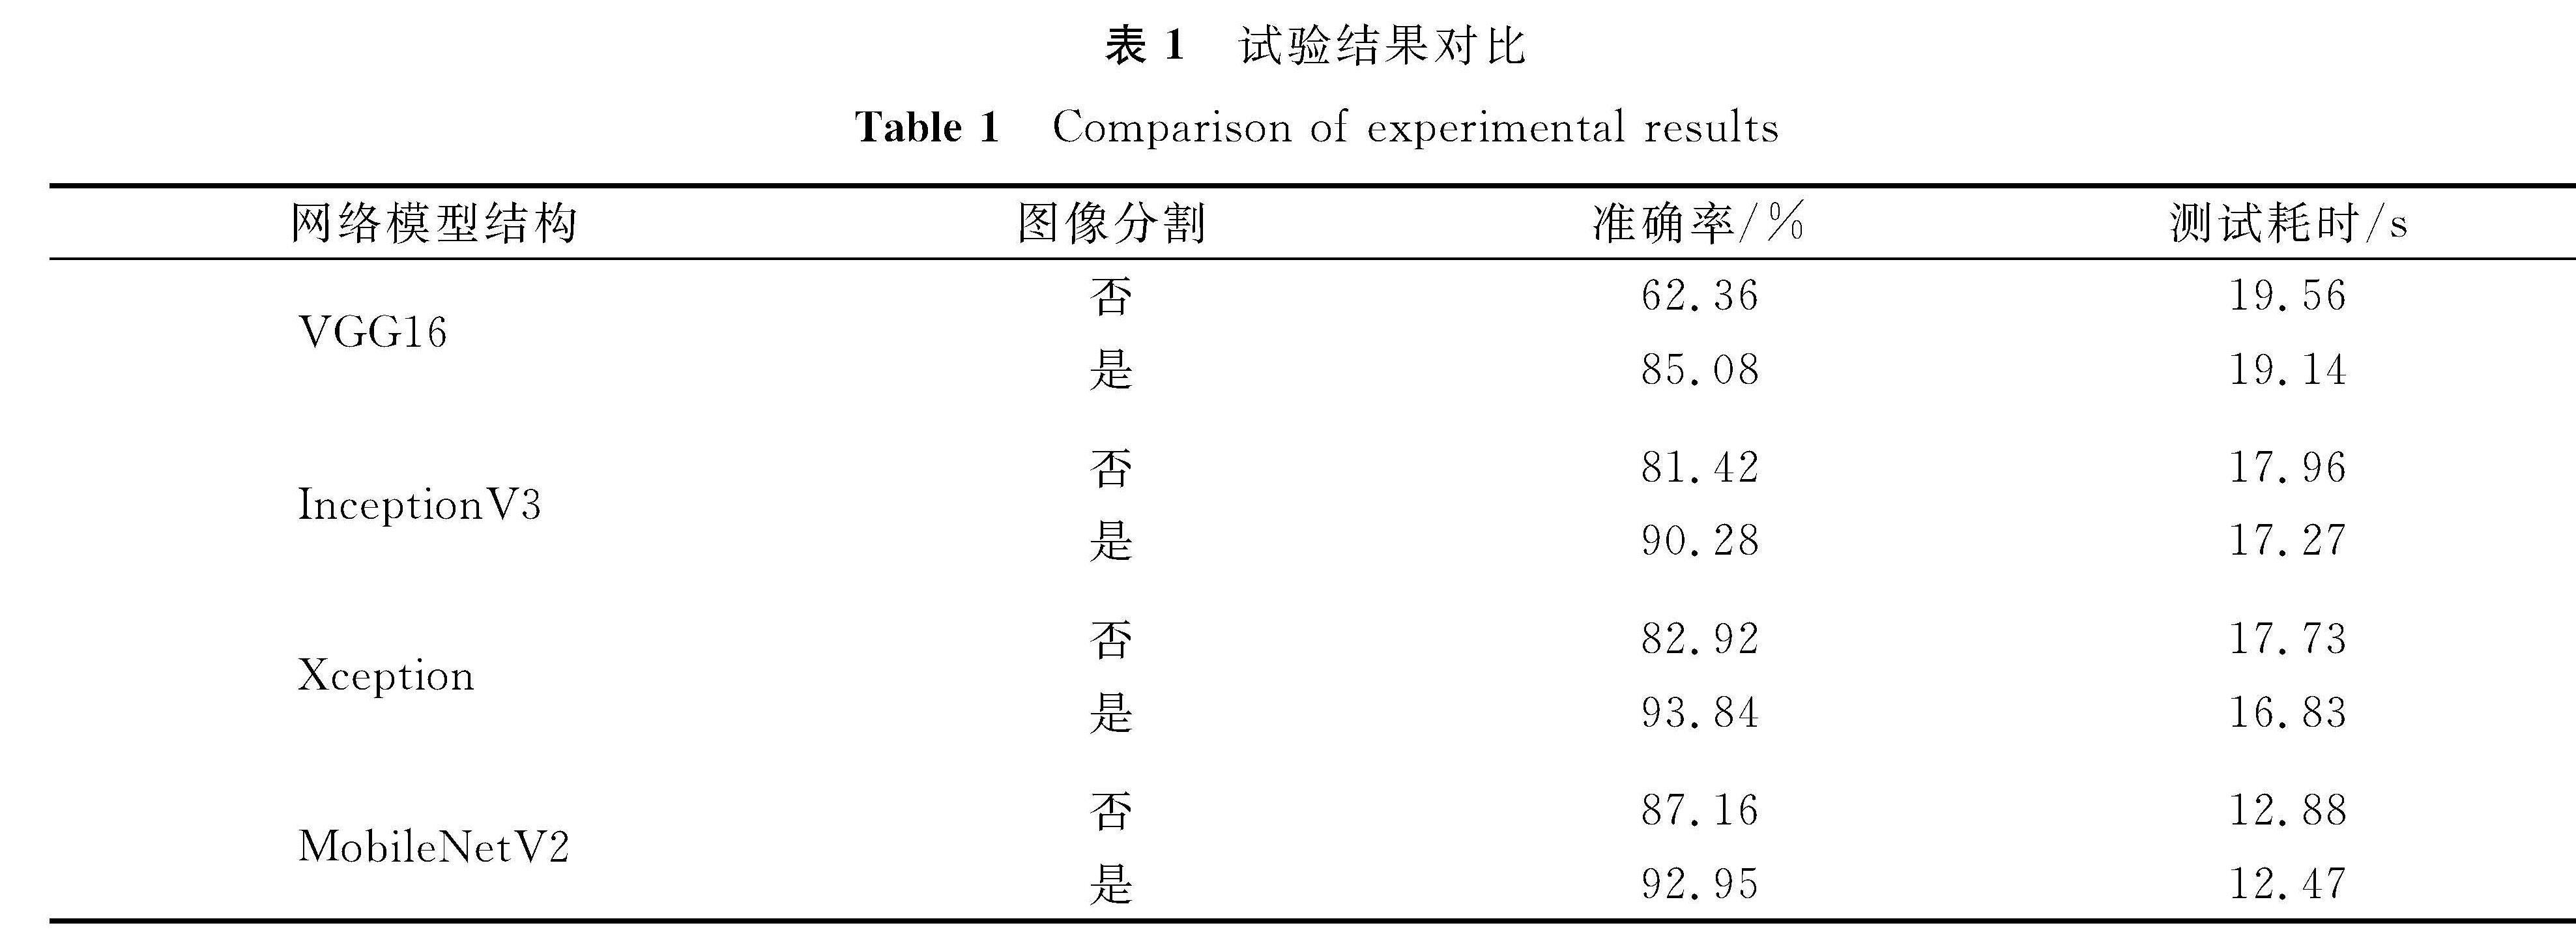 表1 试验结果对比<br/>Table 1 Comparison of experimental results